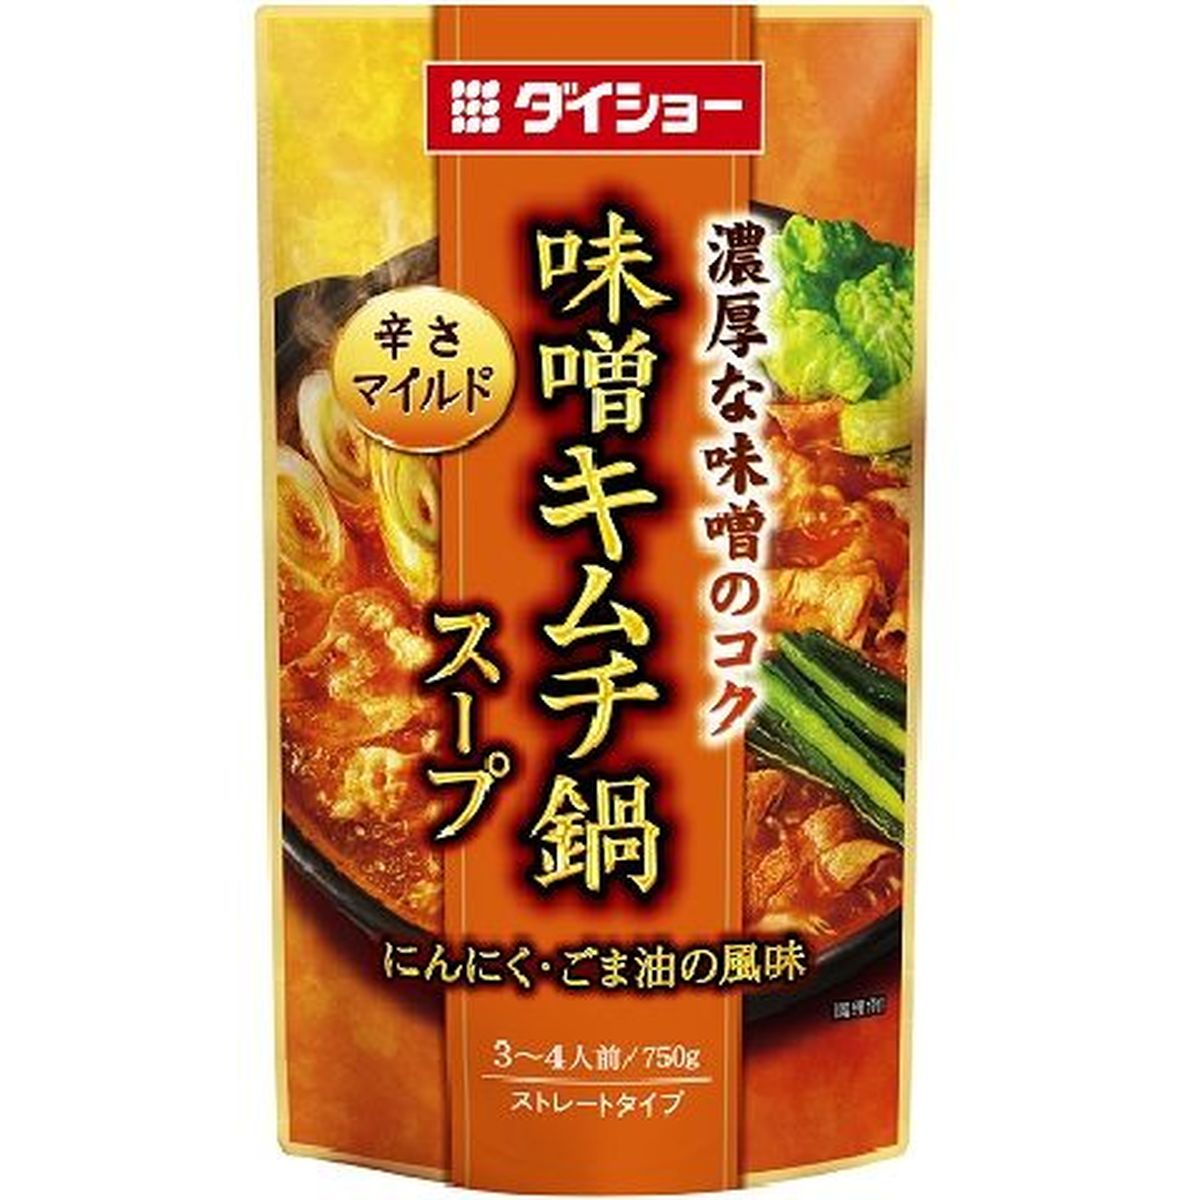 【10個入リ】ダイショー 味噌キムチ鍋スープR18 750g